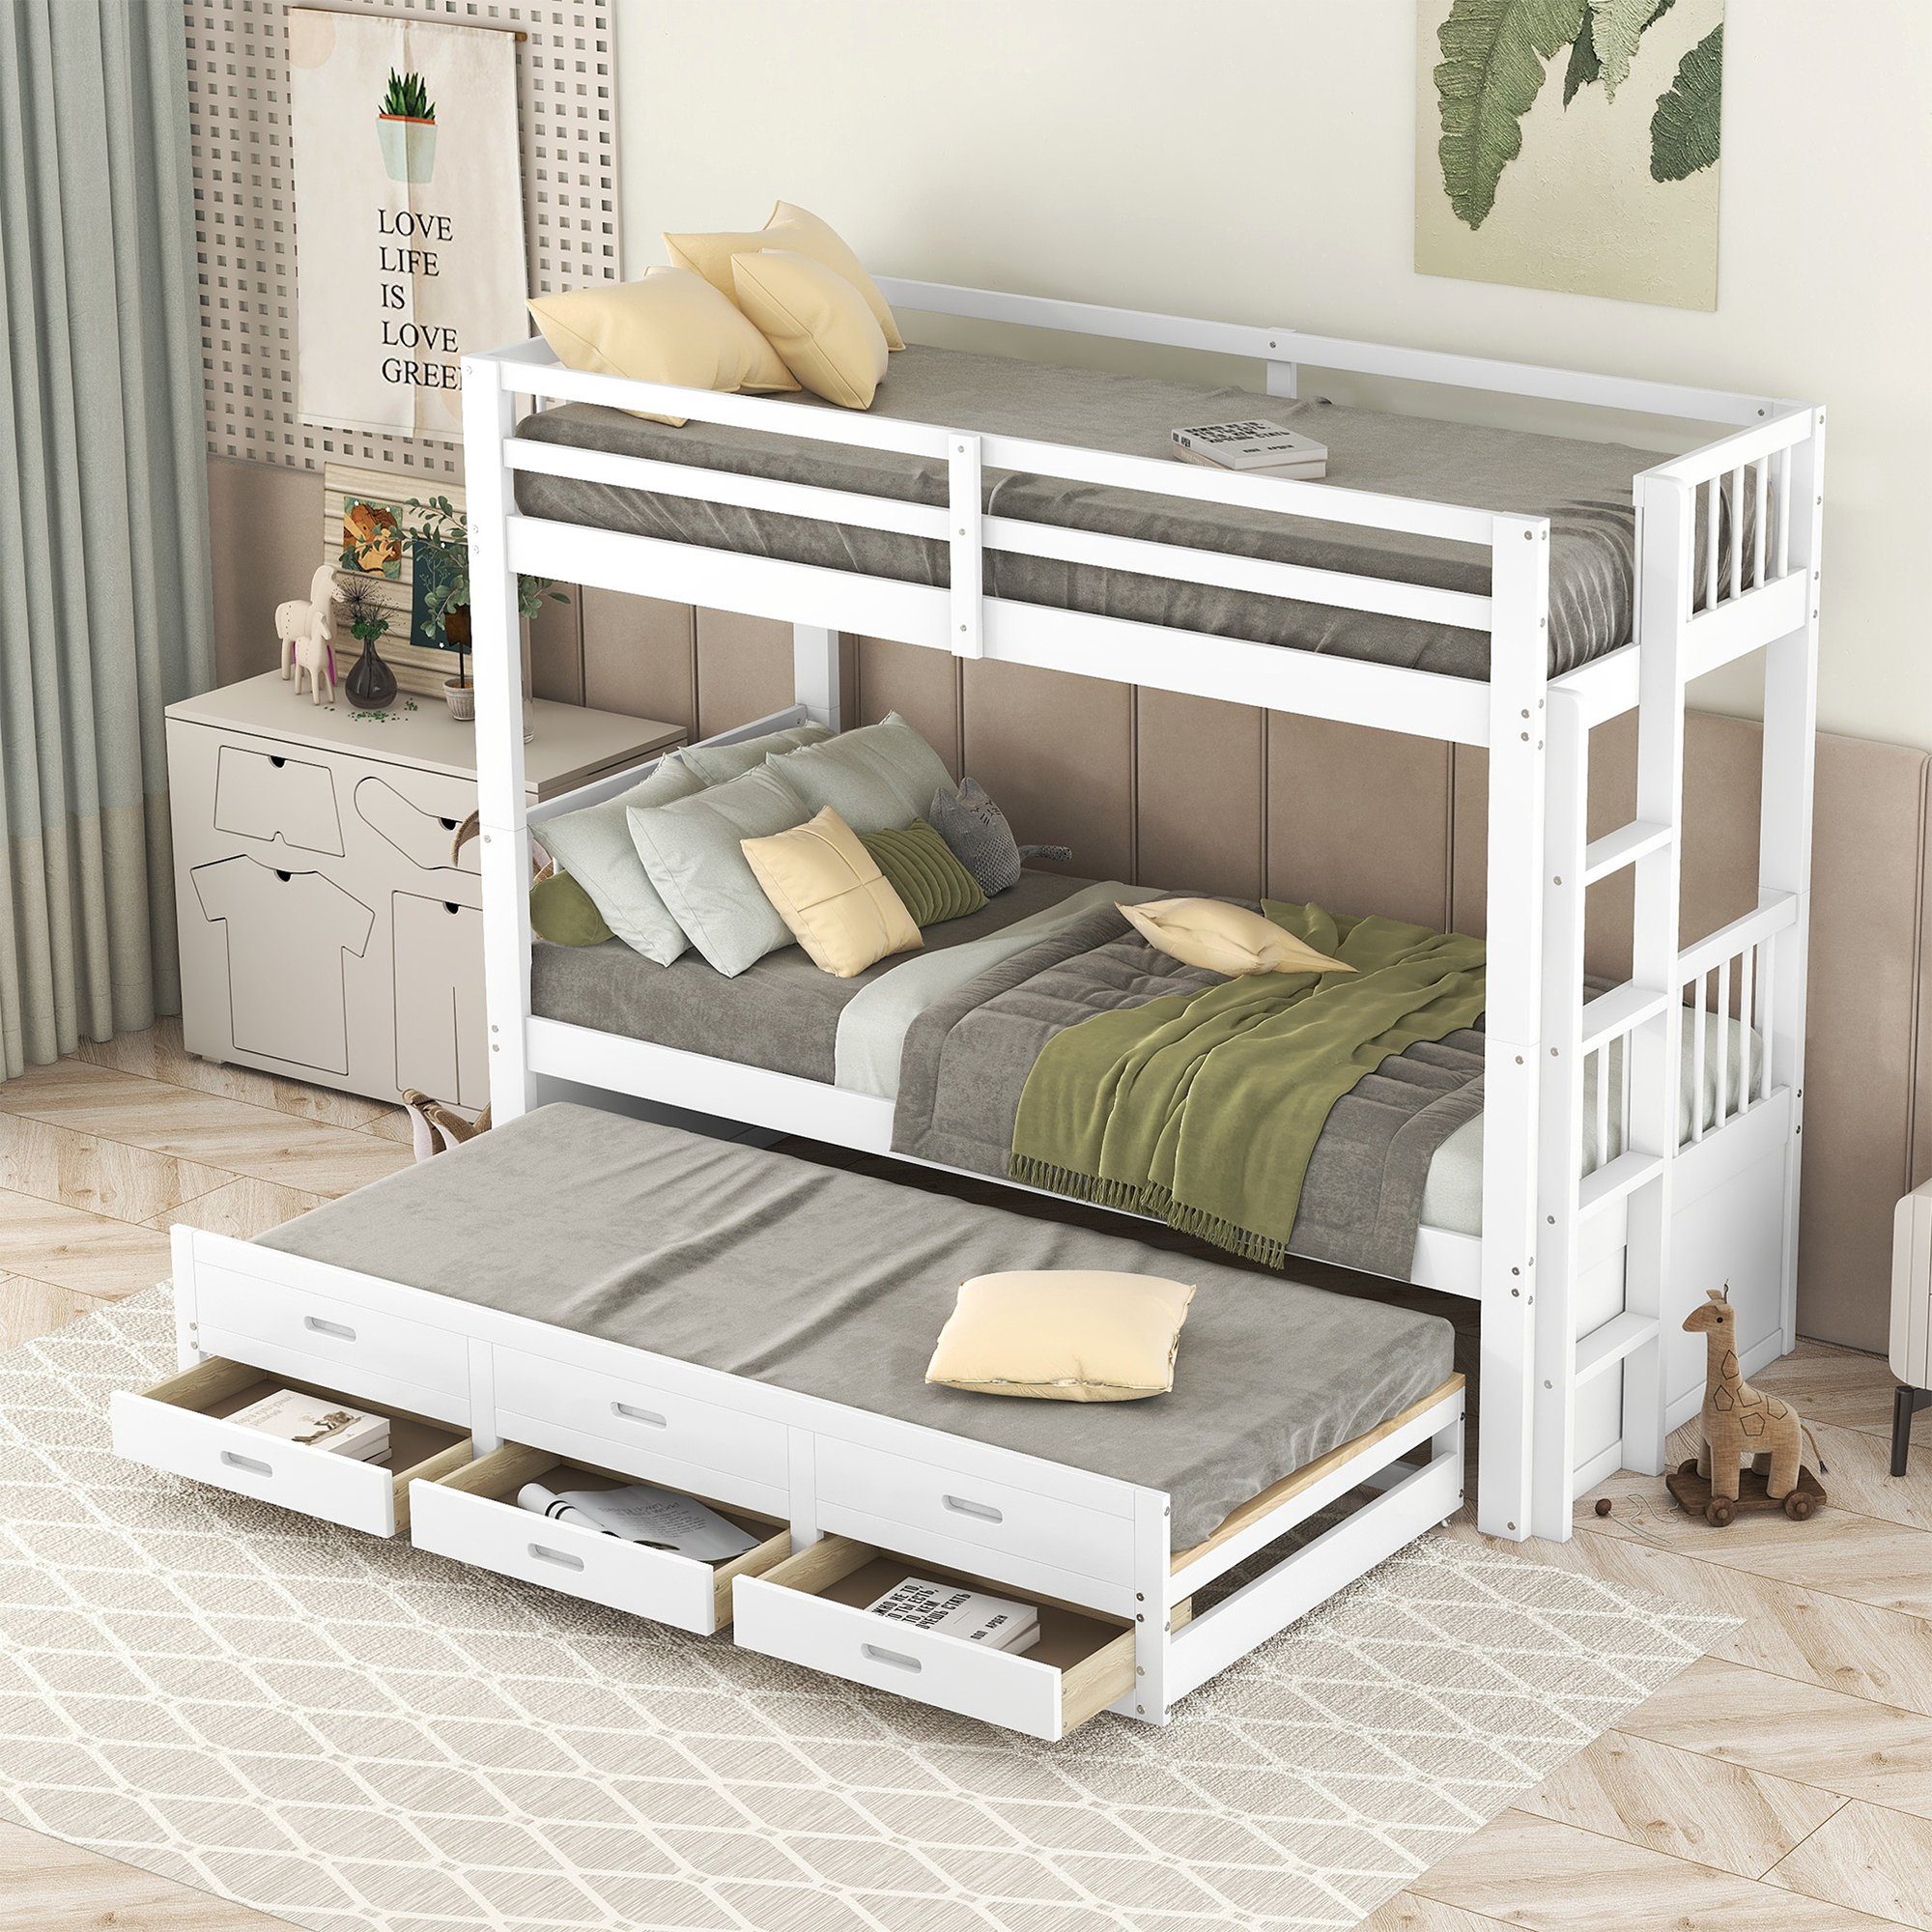 SOFTWEARY Etagenbett mit 3 Schlafgelegenheiten und Lattenrost (90x200 cm), umbaufähig zu 2 Einzelbetten, Kinderbett, Kiefer weiß